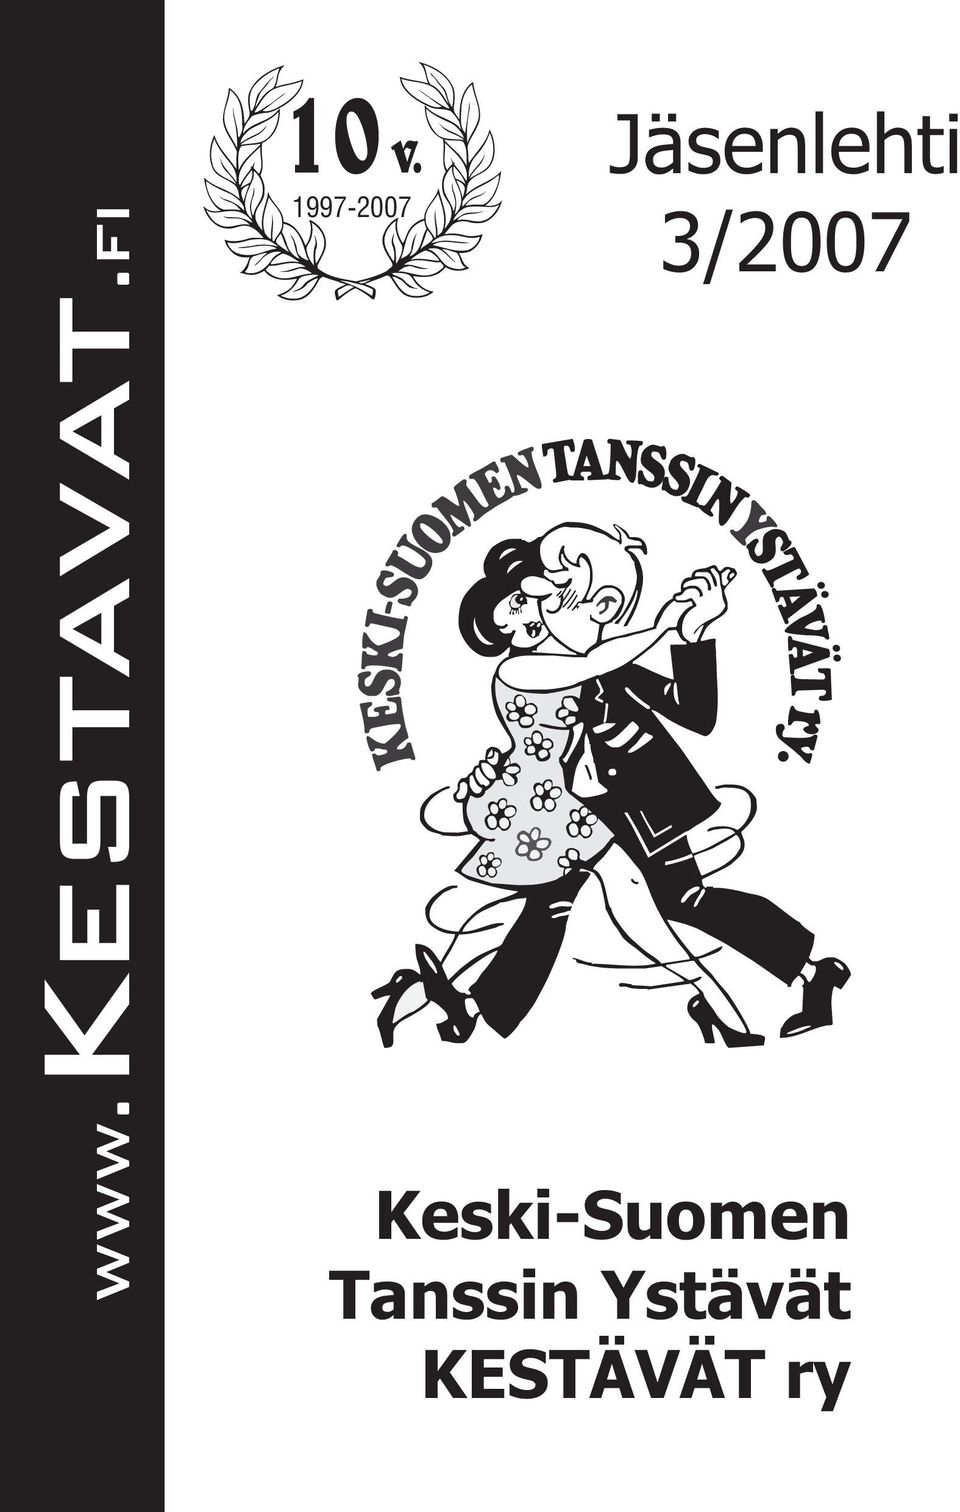 3/2007 Keski-Suomen